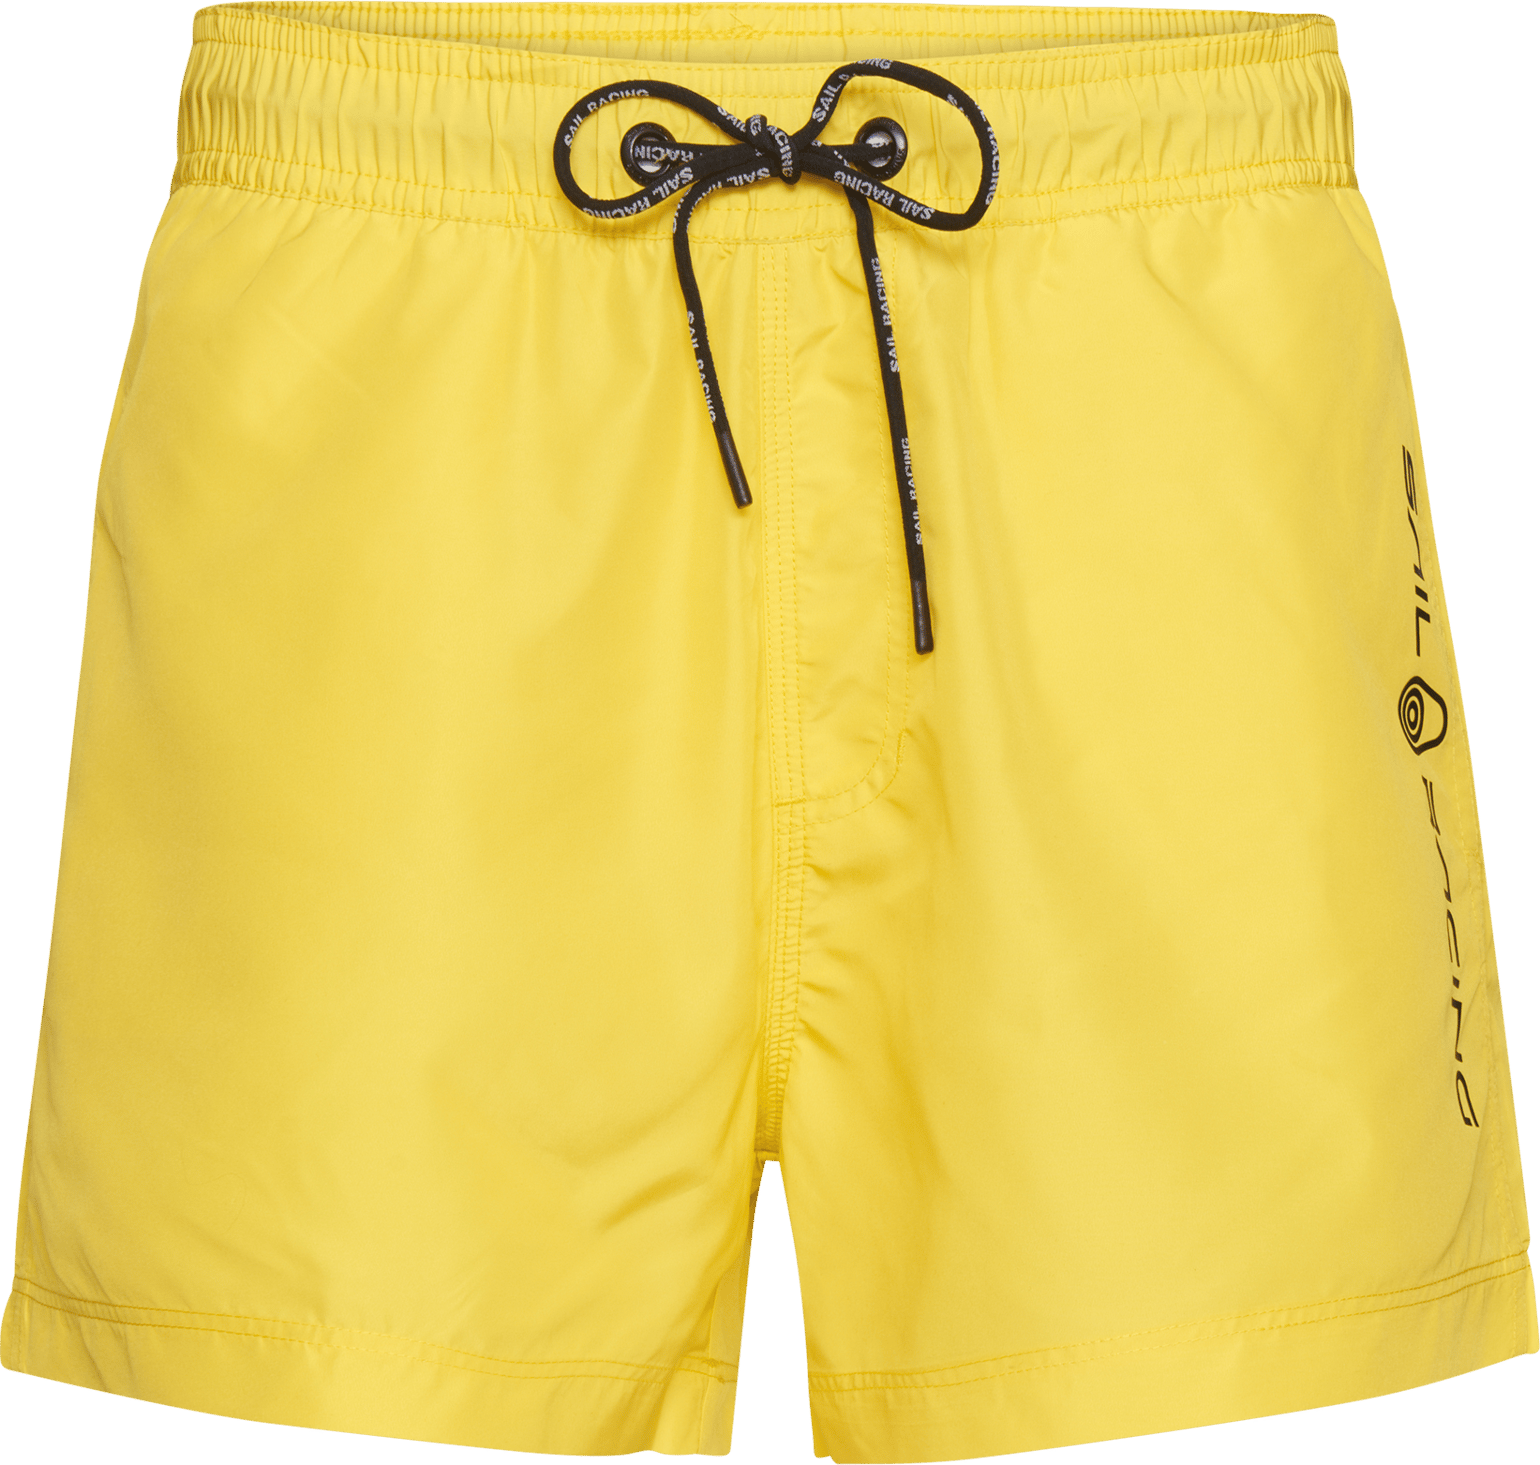 Sail Racing Men's Bowman Volley Shorts Light Yellow